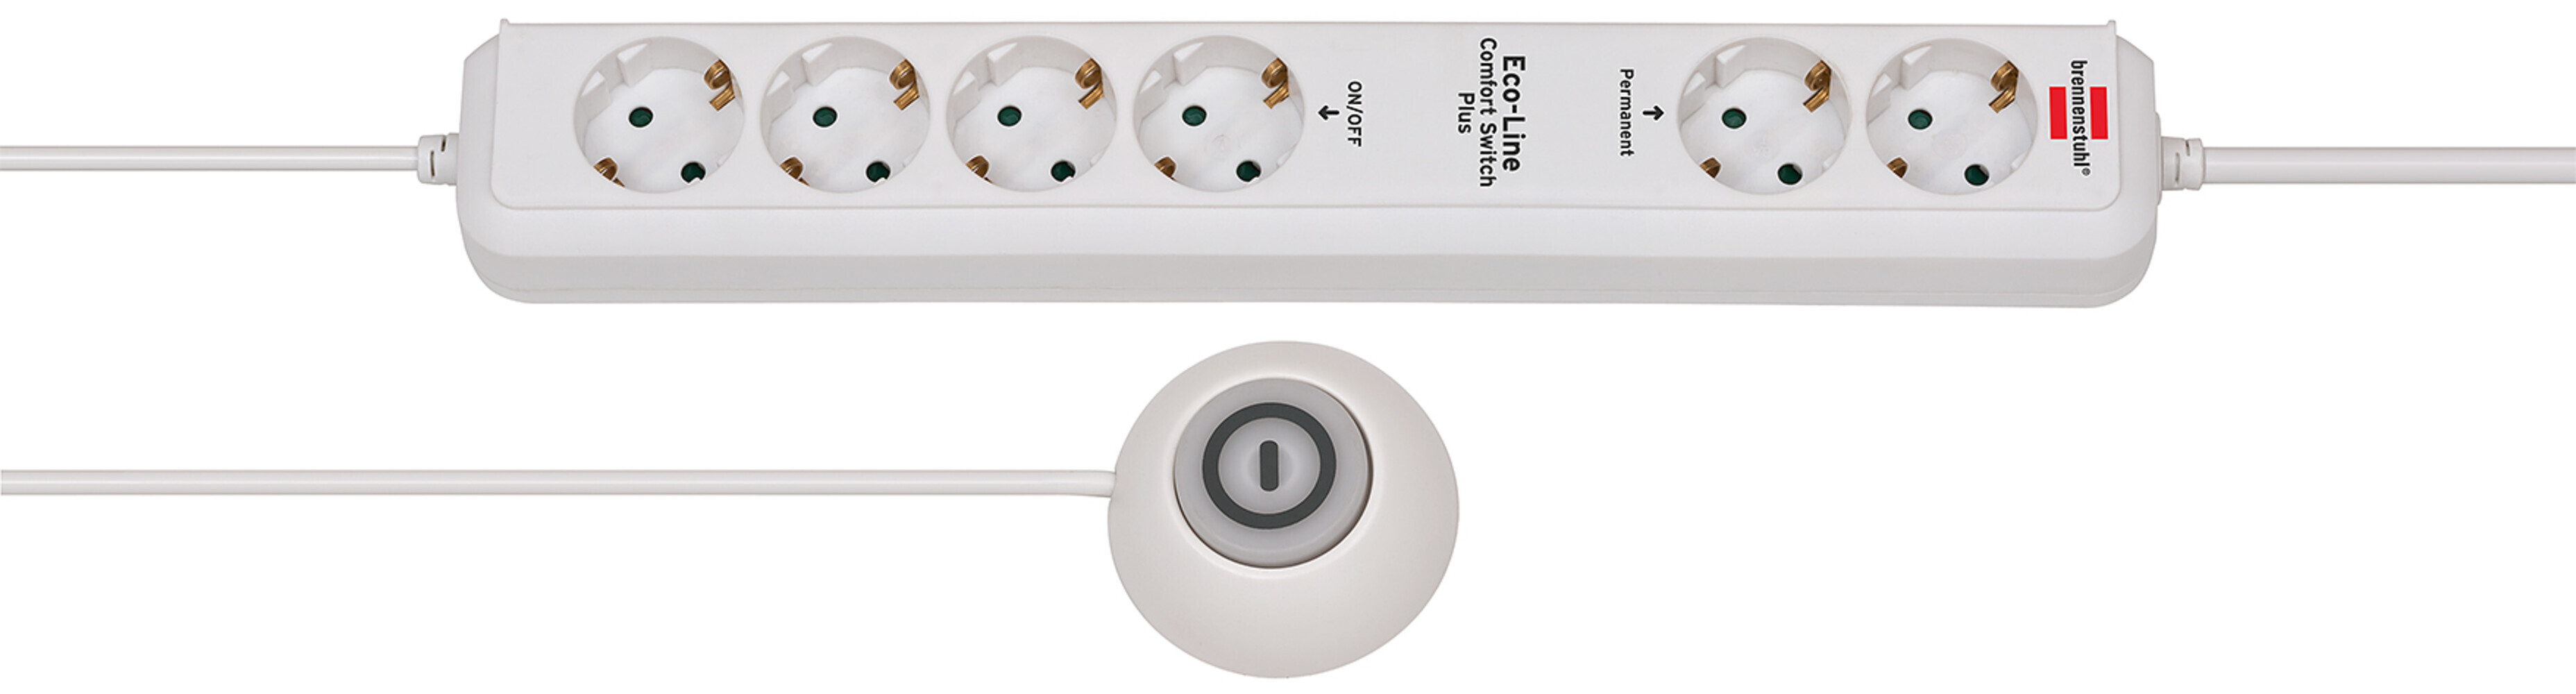 Steckdosenleiste von Brennenstuhl Eco Line Comfort Switch Plus mit 6 permanenten und 4 schaltbaren Steckdosen, beleuchtetem Fußschalter und in weiß